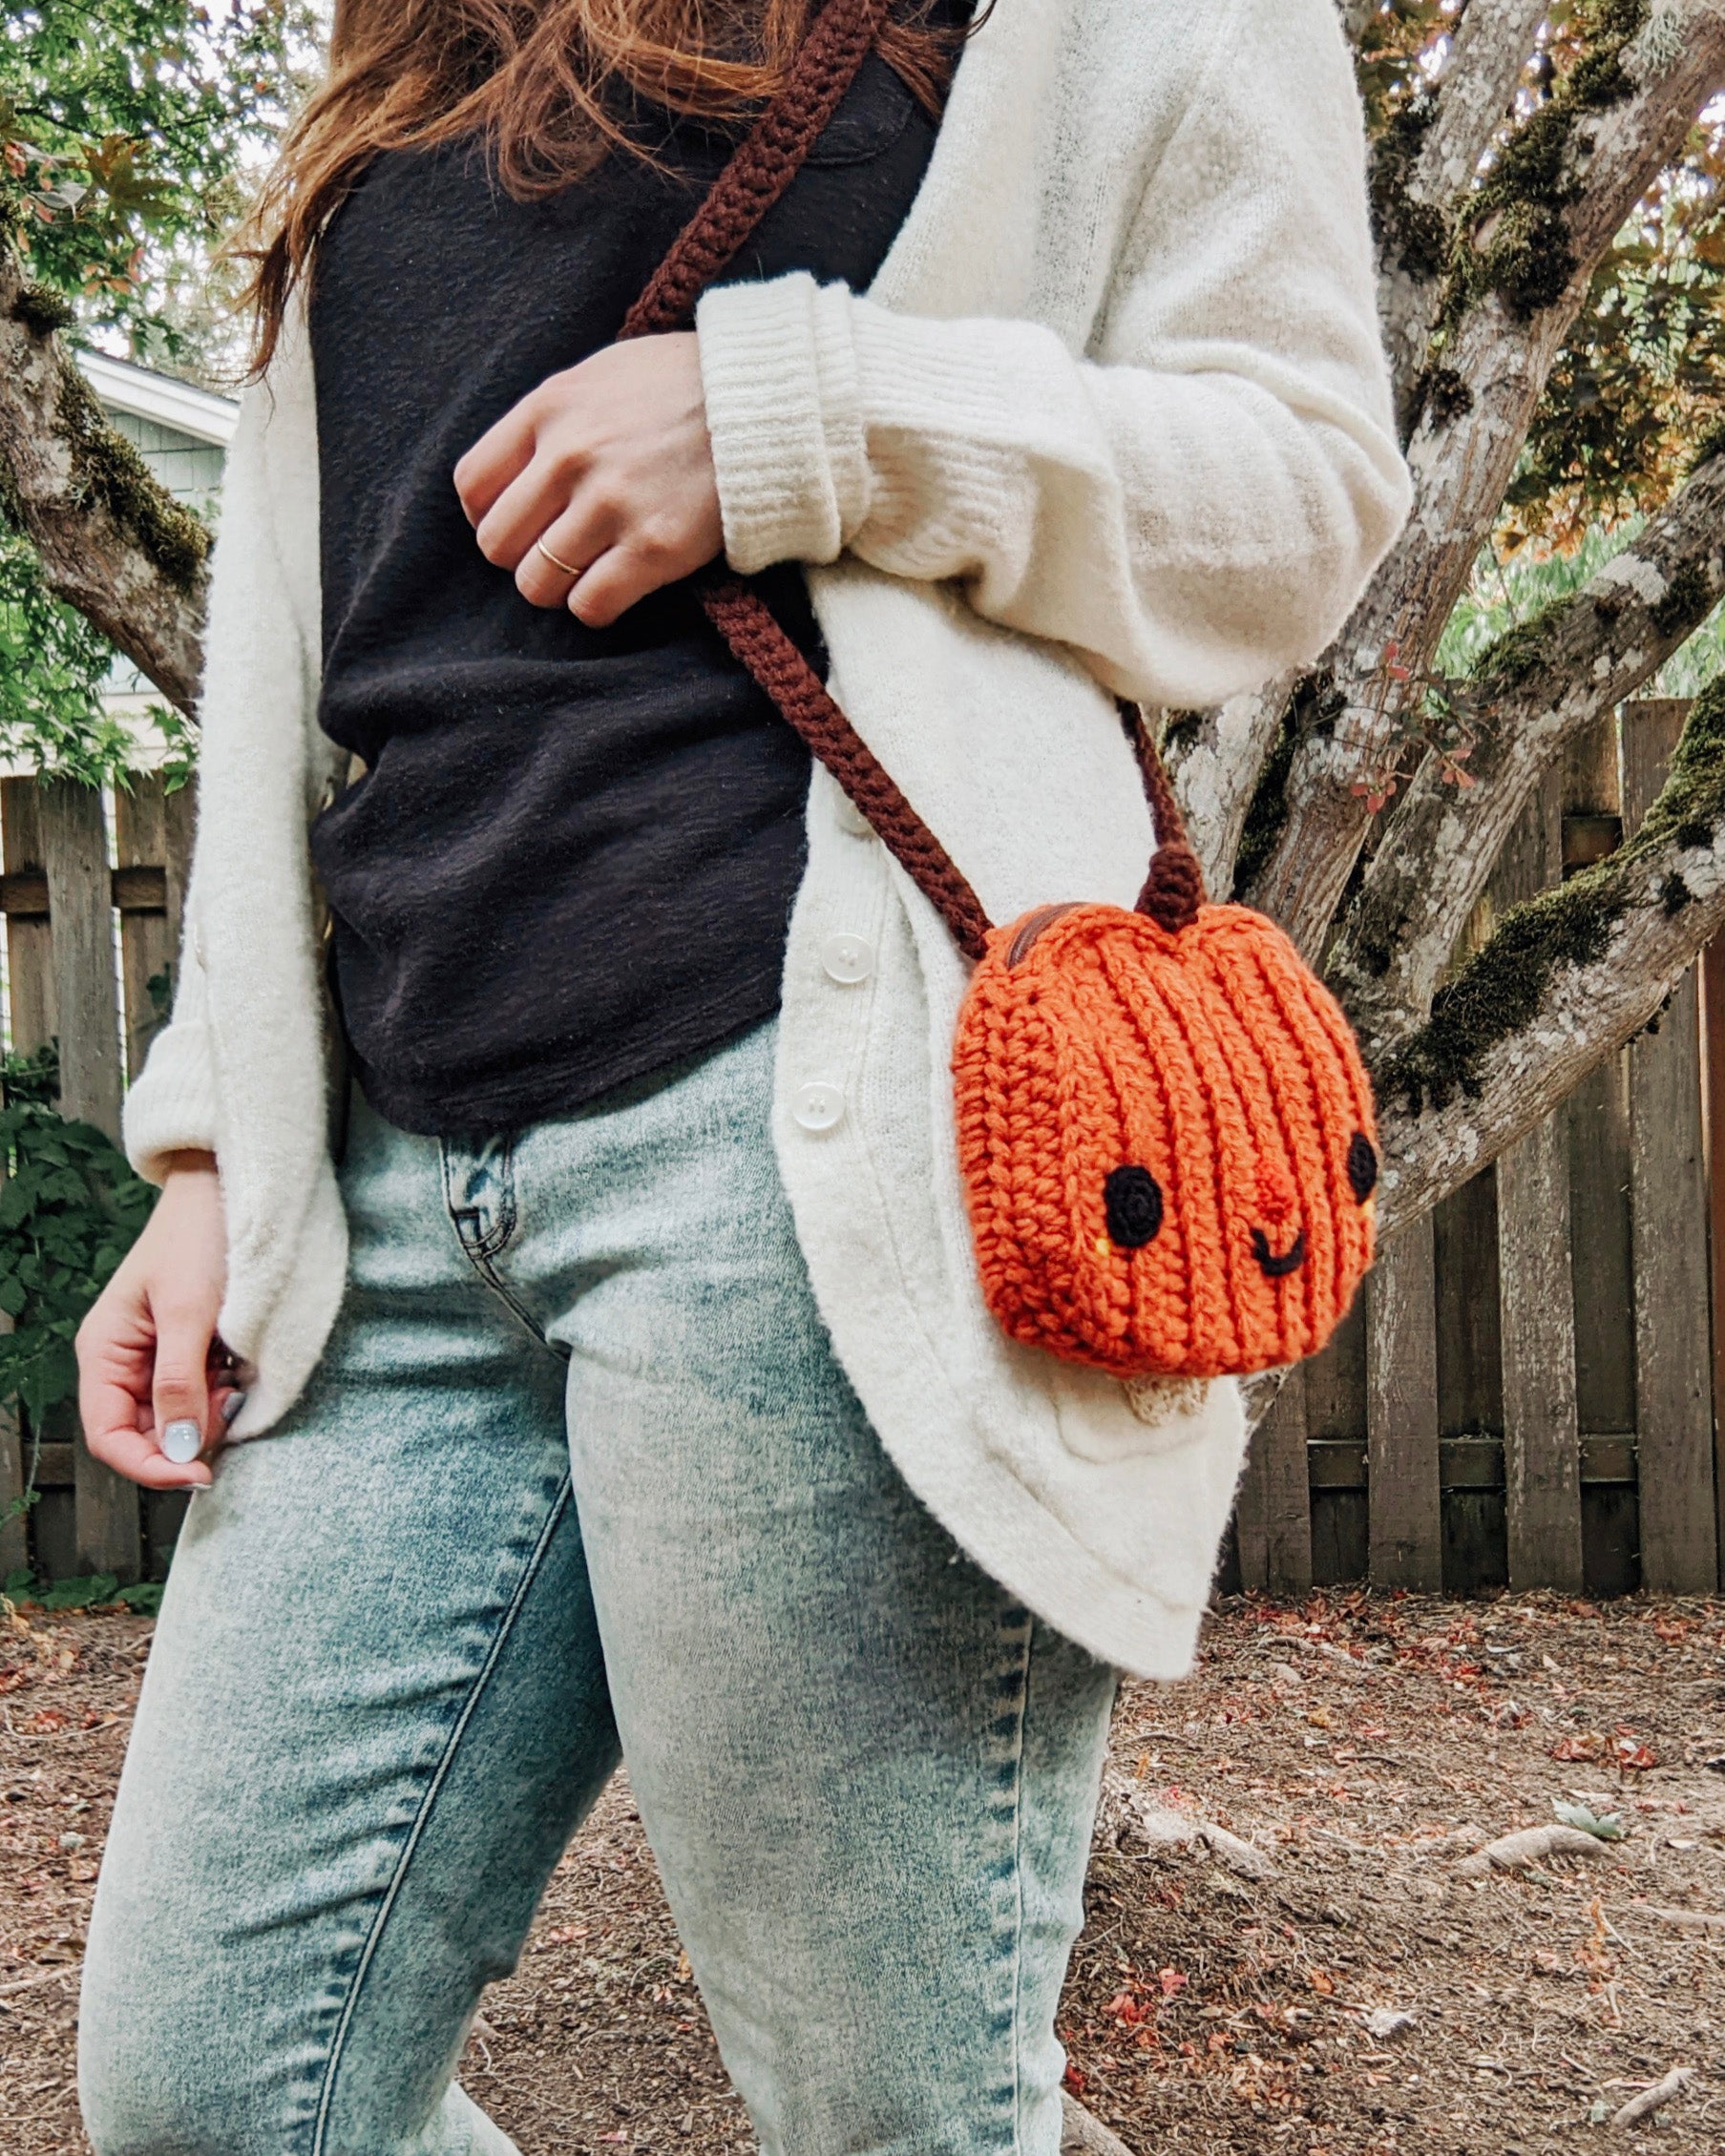 Crocheted Crossbody Bags & Clutch Pattern